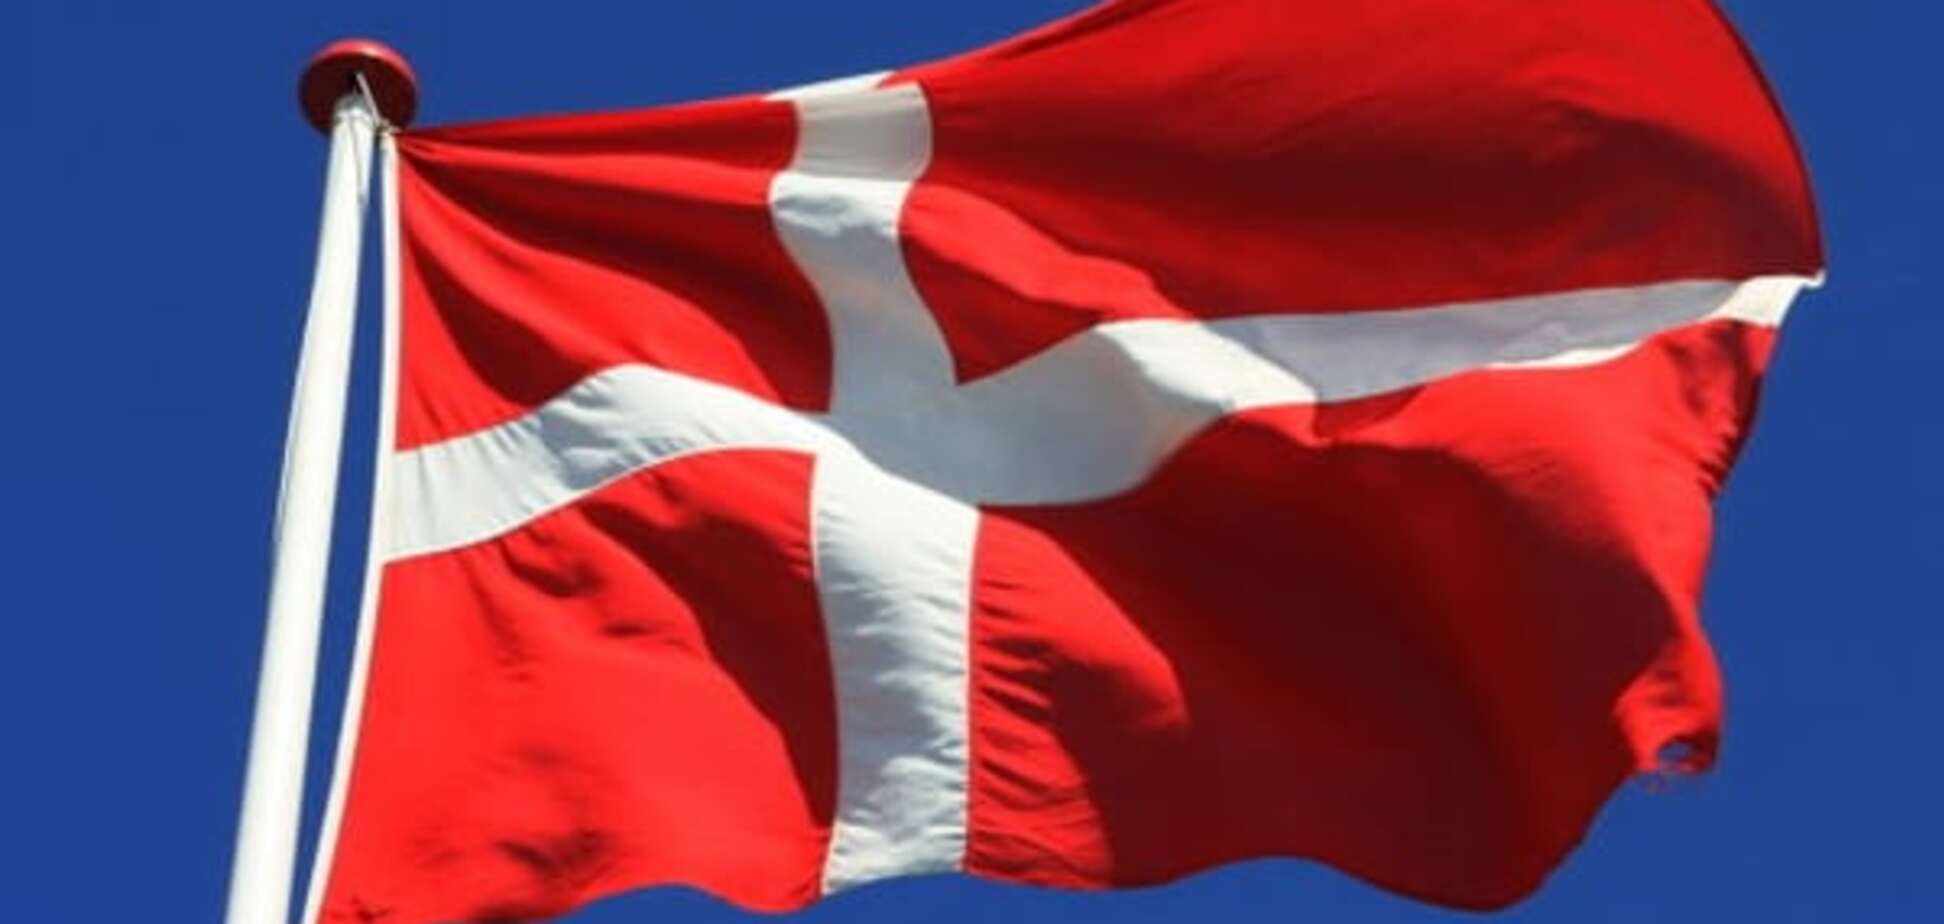 Зразок для наслідування. Міністр оборони Данії подав у відставку через звинувачення в корупції